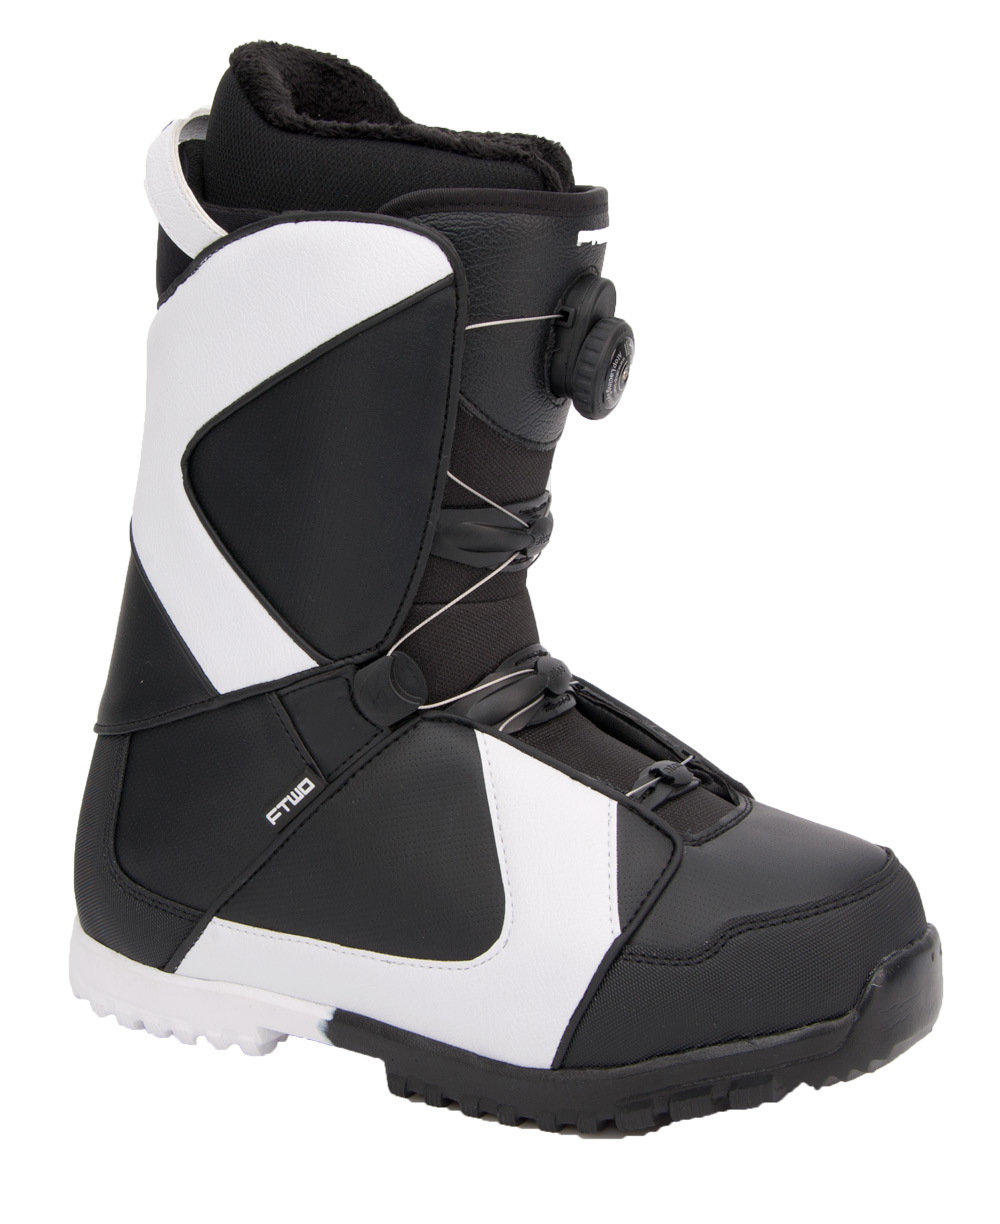 Ботинки сноубордические F2 Air размер 29,0 black/black  фото 